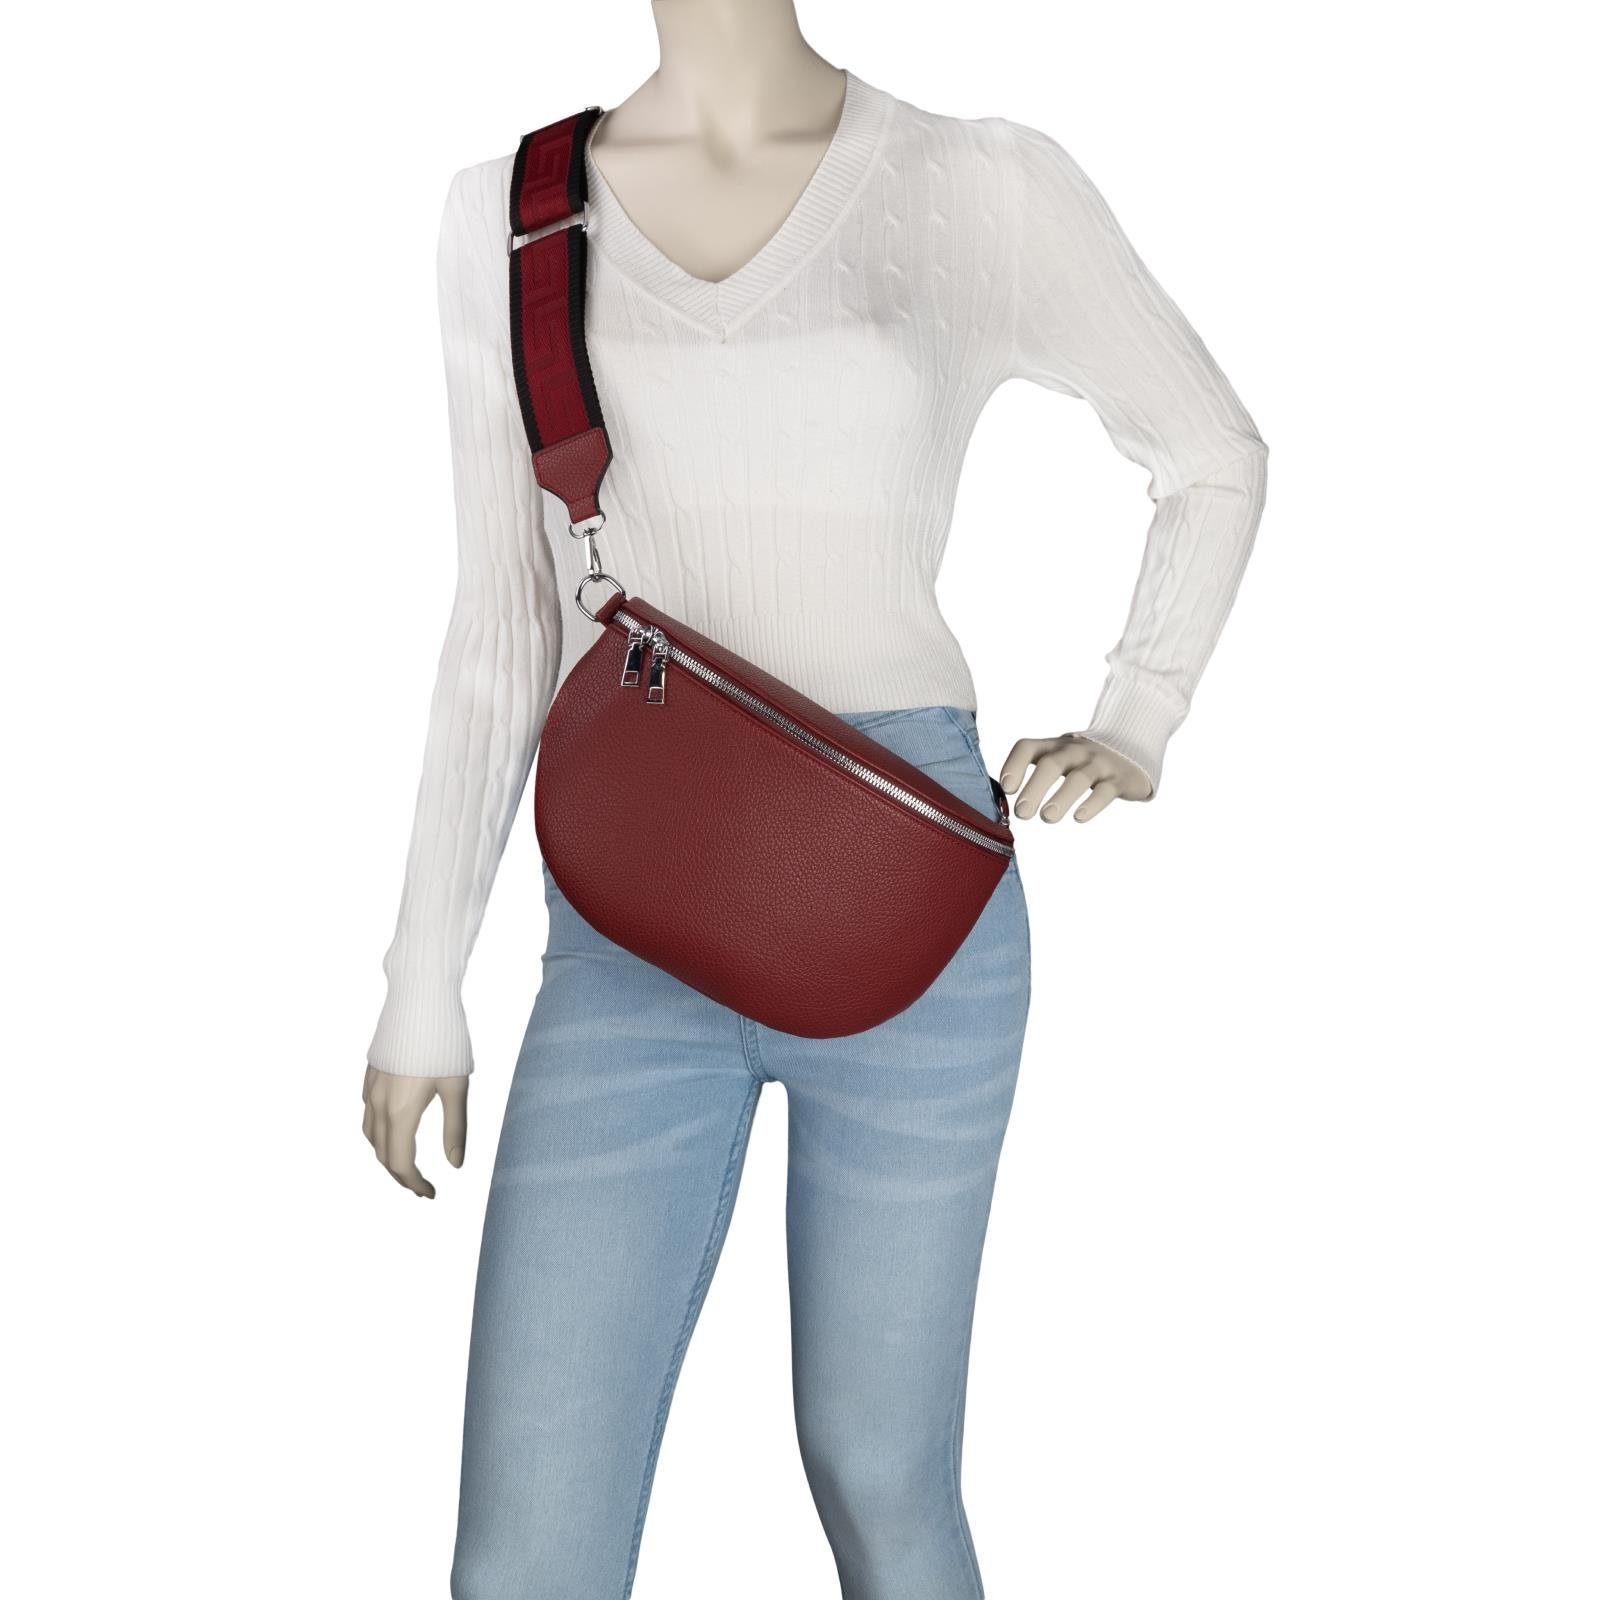 EAAKIE Gürteltasche Bauchtasche XL Umhängetasche Hüfttasche Schultertasche, Umhängetasche Crossbody-Bag CrossOver, PURPLE-RED Kunstleder tragbar als Italy